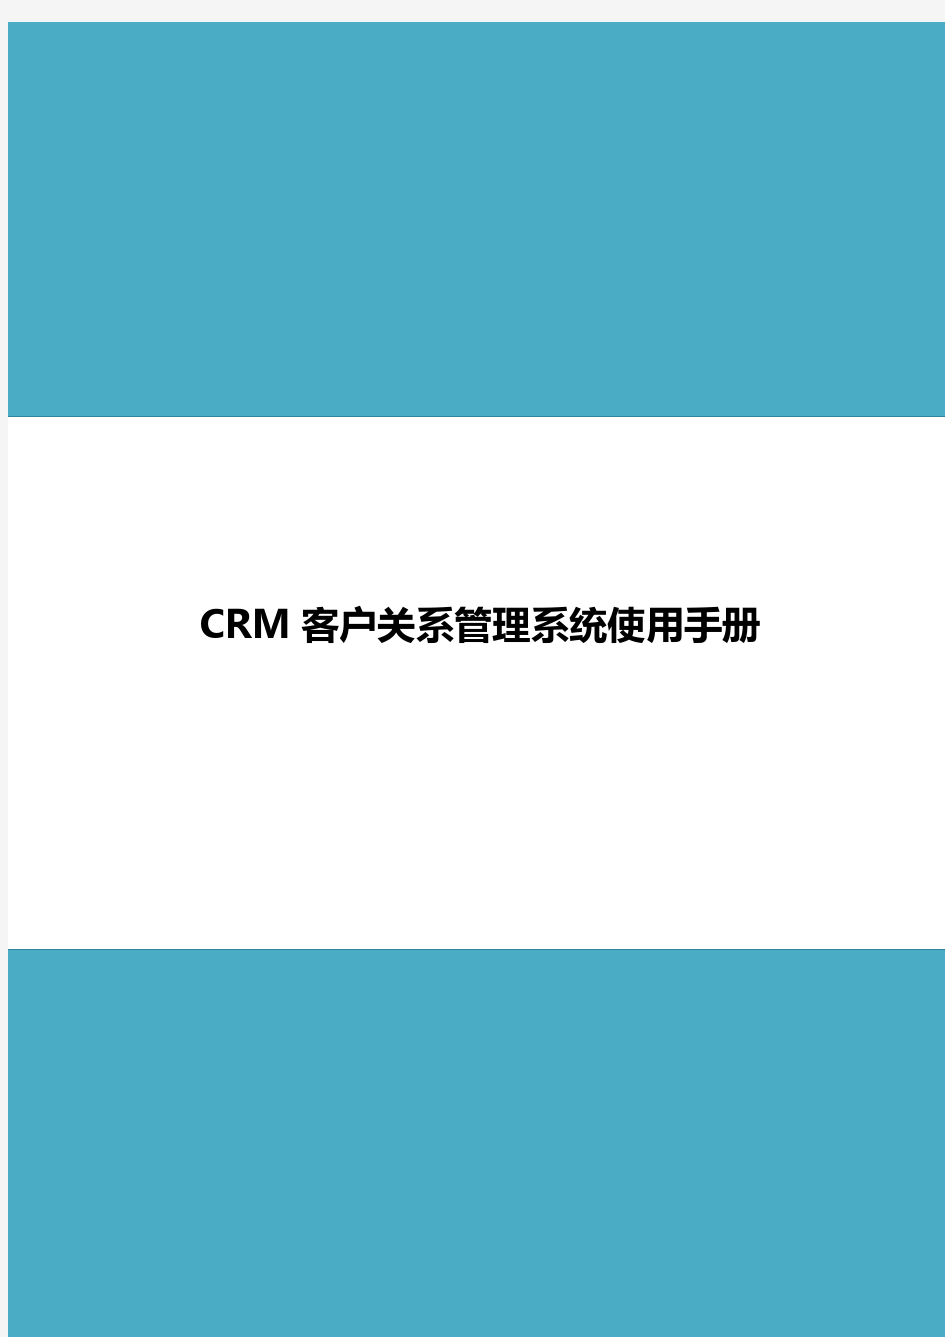 CRM客户关系管理系统用户手册